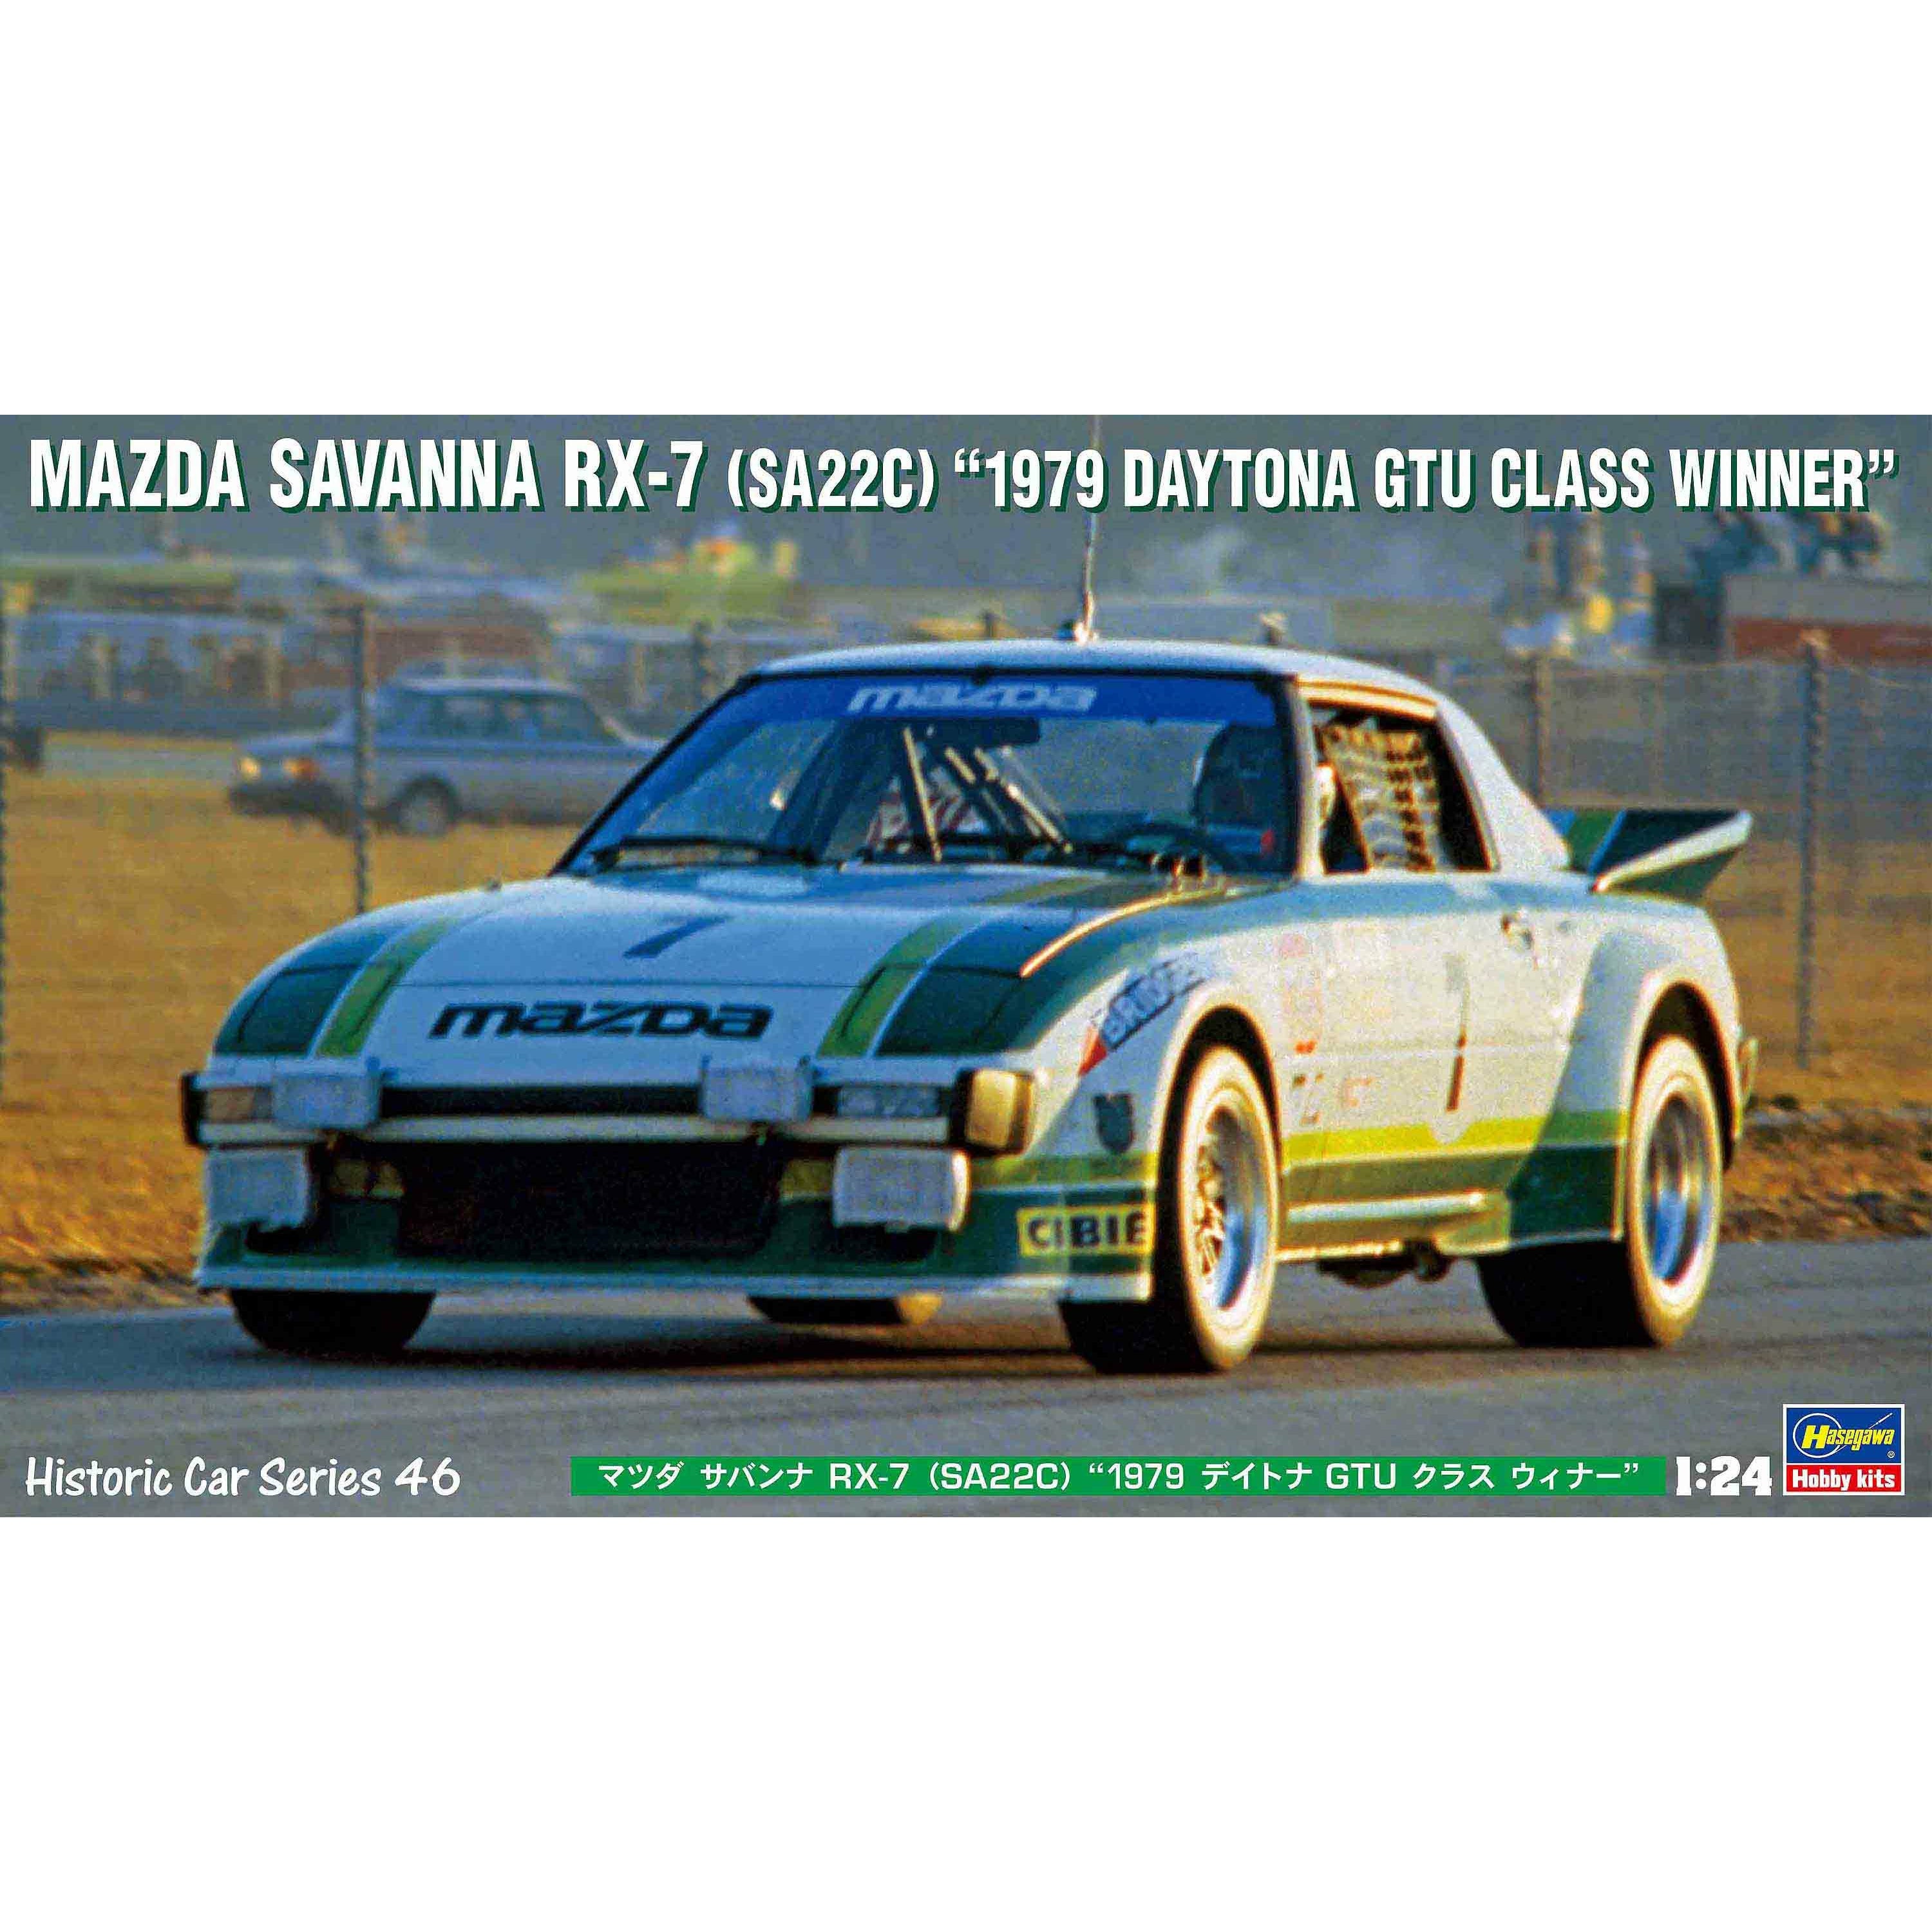 Mazda Savanna RX-7 (SA22C) '1979 Daytona GTU Class Winner' 1/24 Model Car Kit #21146 by Hasegawa